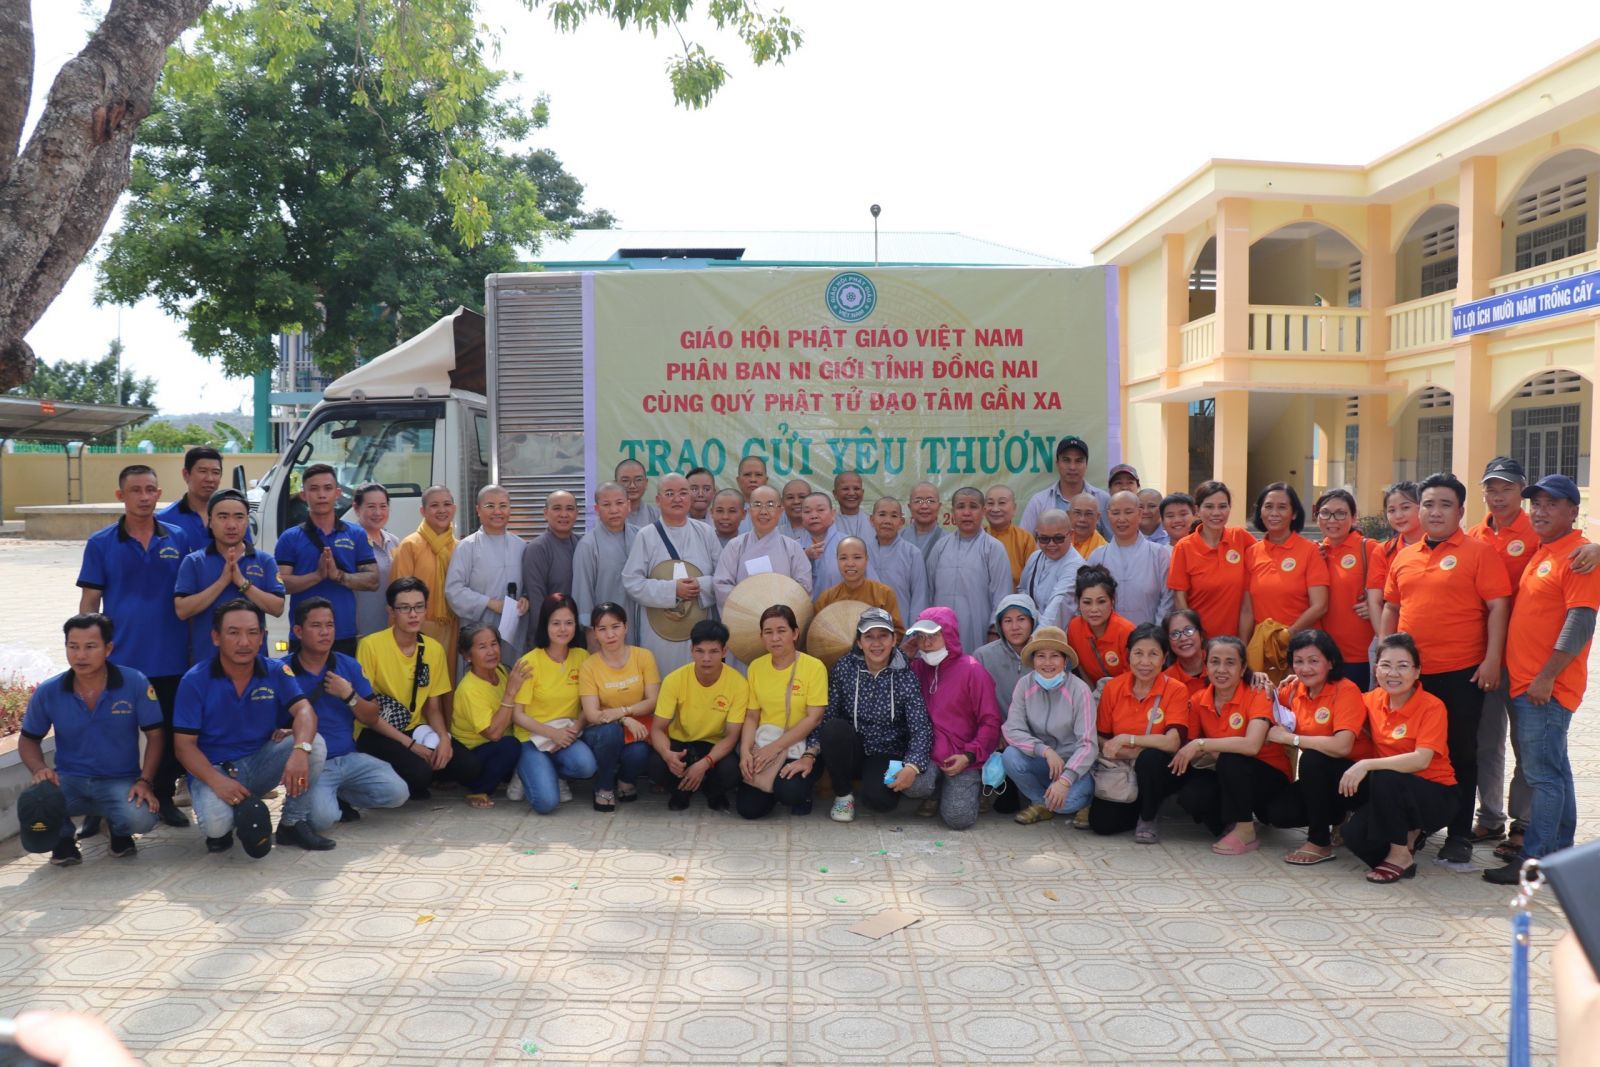 Đồng Nai: Phân Ban Ni Giới GHPGVN tỉnh thực hiện chuyến Thiện nguyện hướng về các huyện, xã khó khăn của huyện Tân Phú - Hướng về ngày Đại Lễ Phật Đản PL. 2567 - DL. 2023